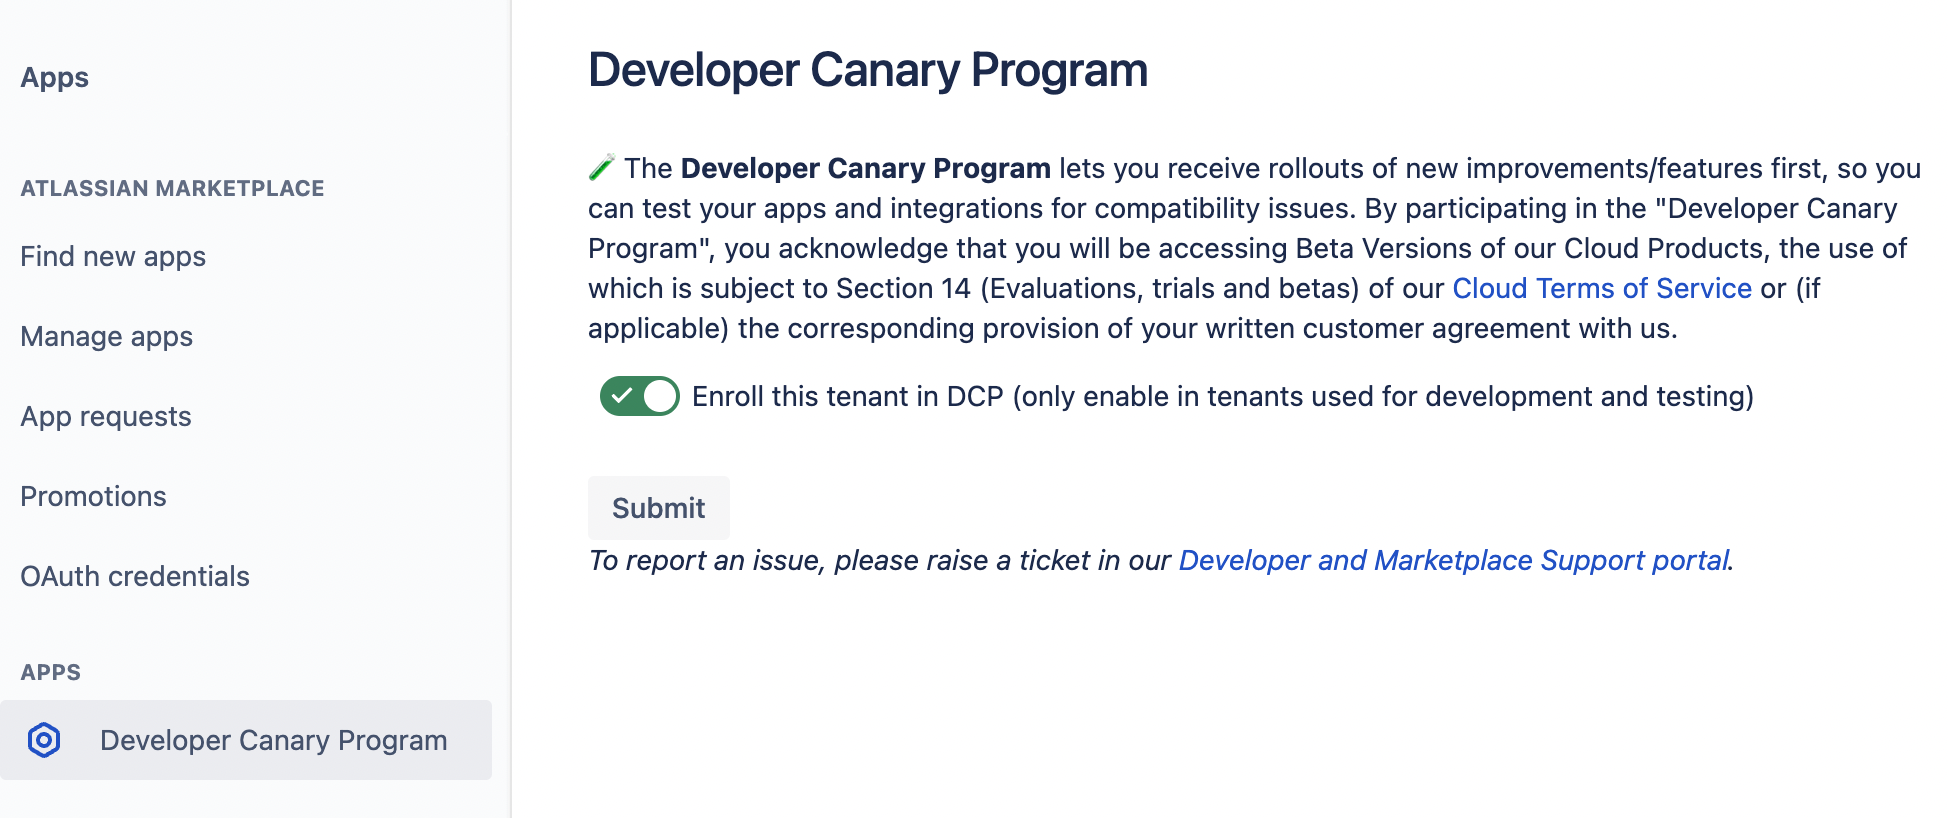 Developer Canary Program App's screenshot